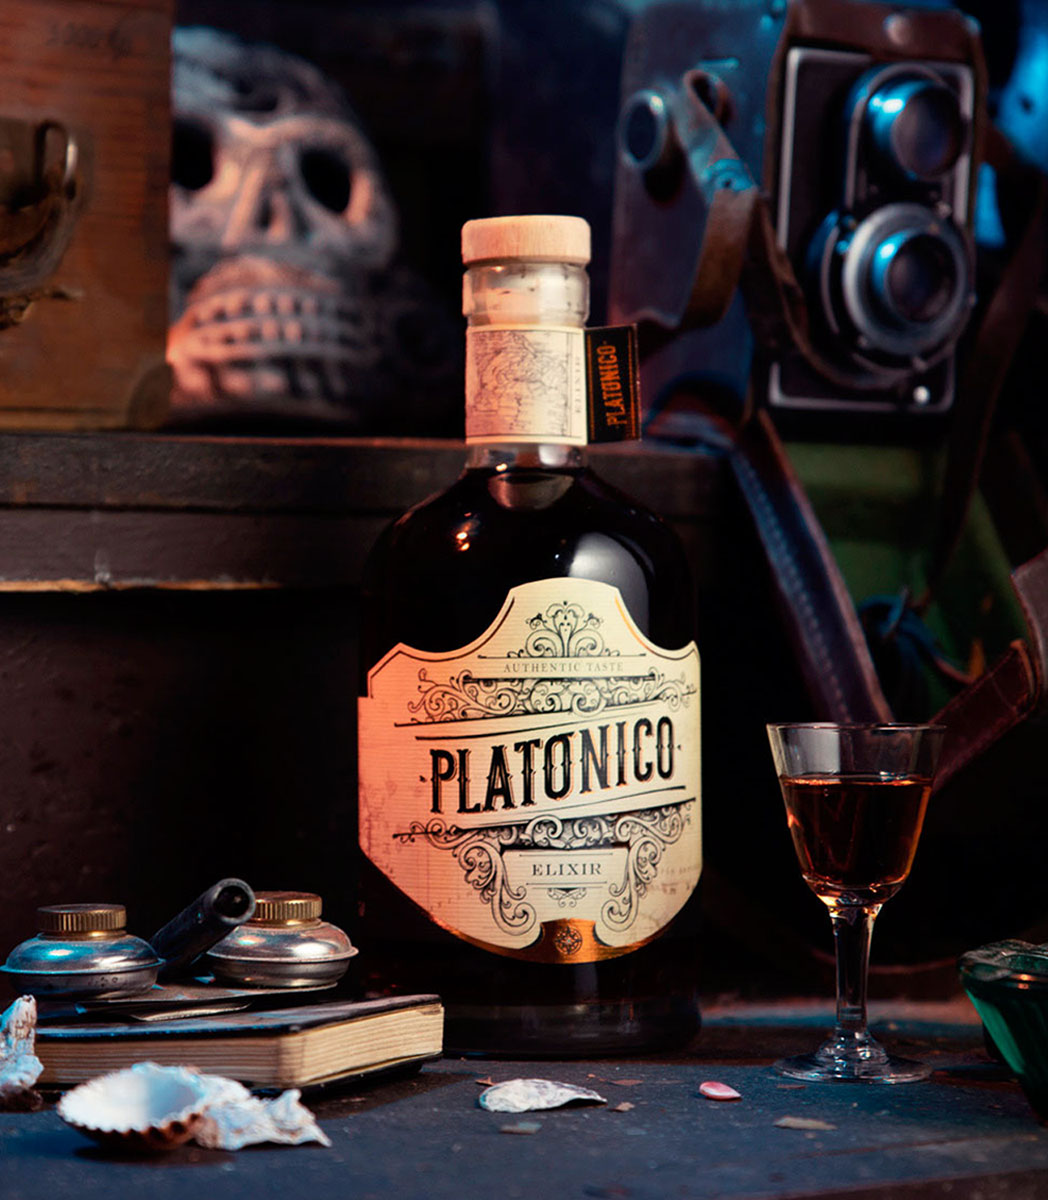 Platonico Elixir